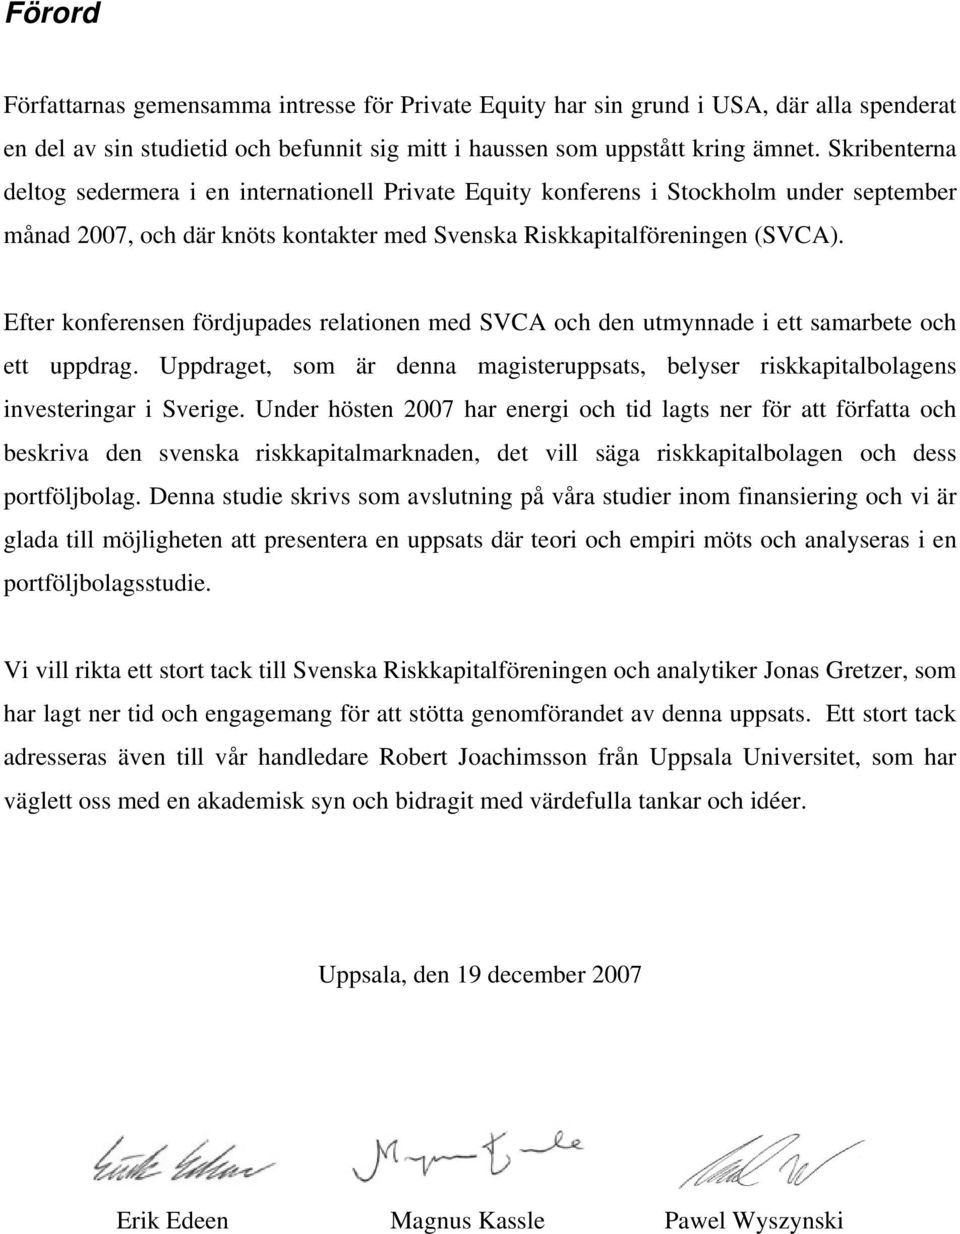 Efter konferensen fördjupades relationen med SVCA och den utmynnade i ett samarbete och ett uppdrag. Uppdraget, som är denna magisteruppsats, belyser riskkapitalbolagens investeringar i Sverige.